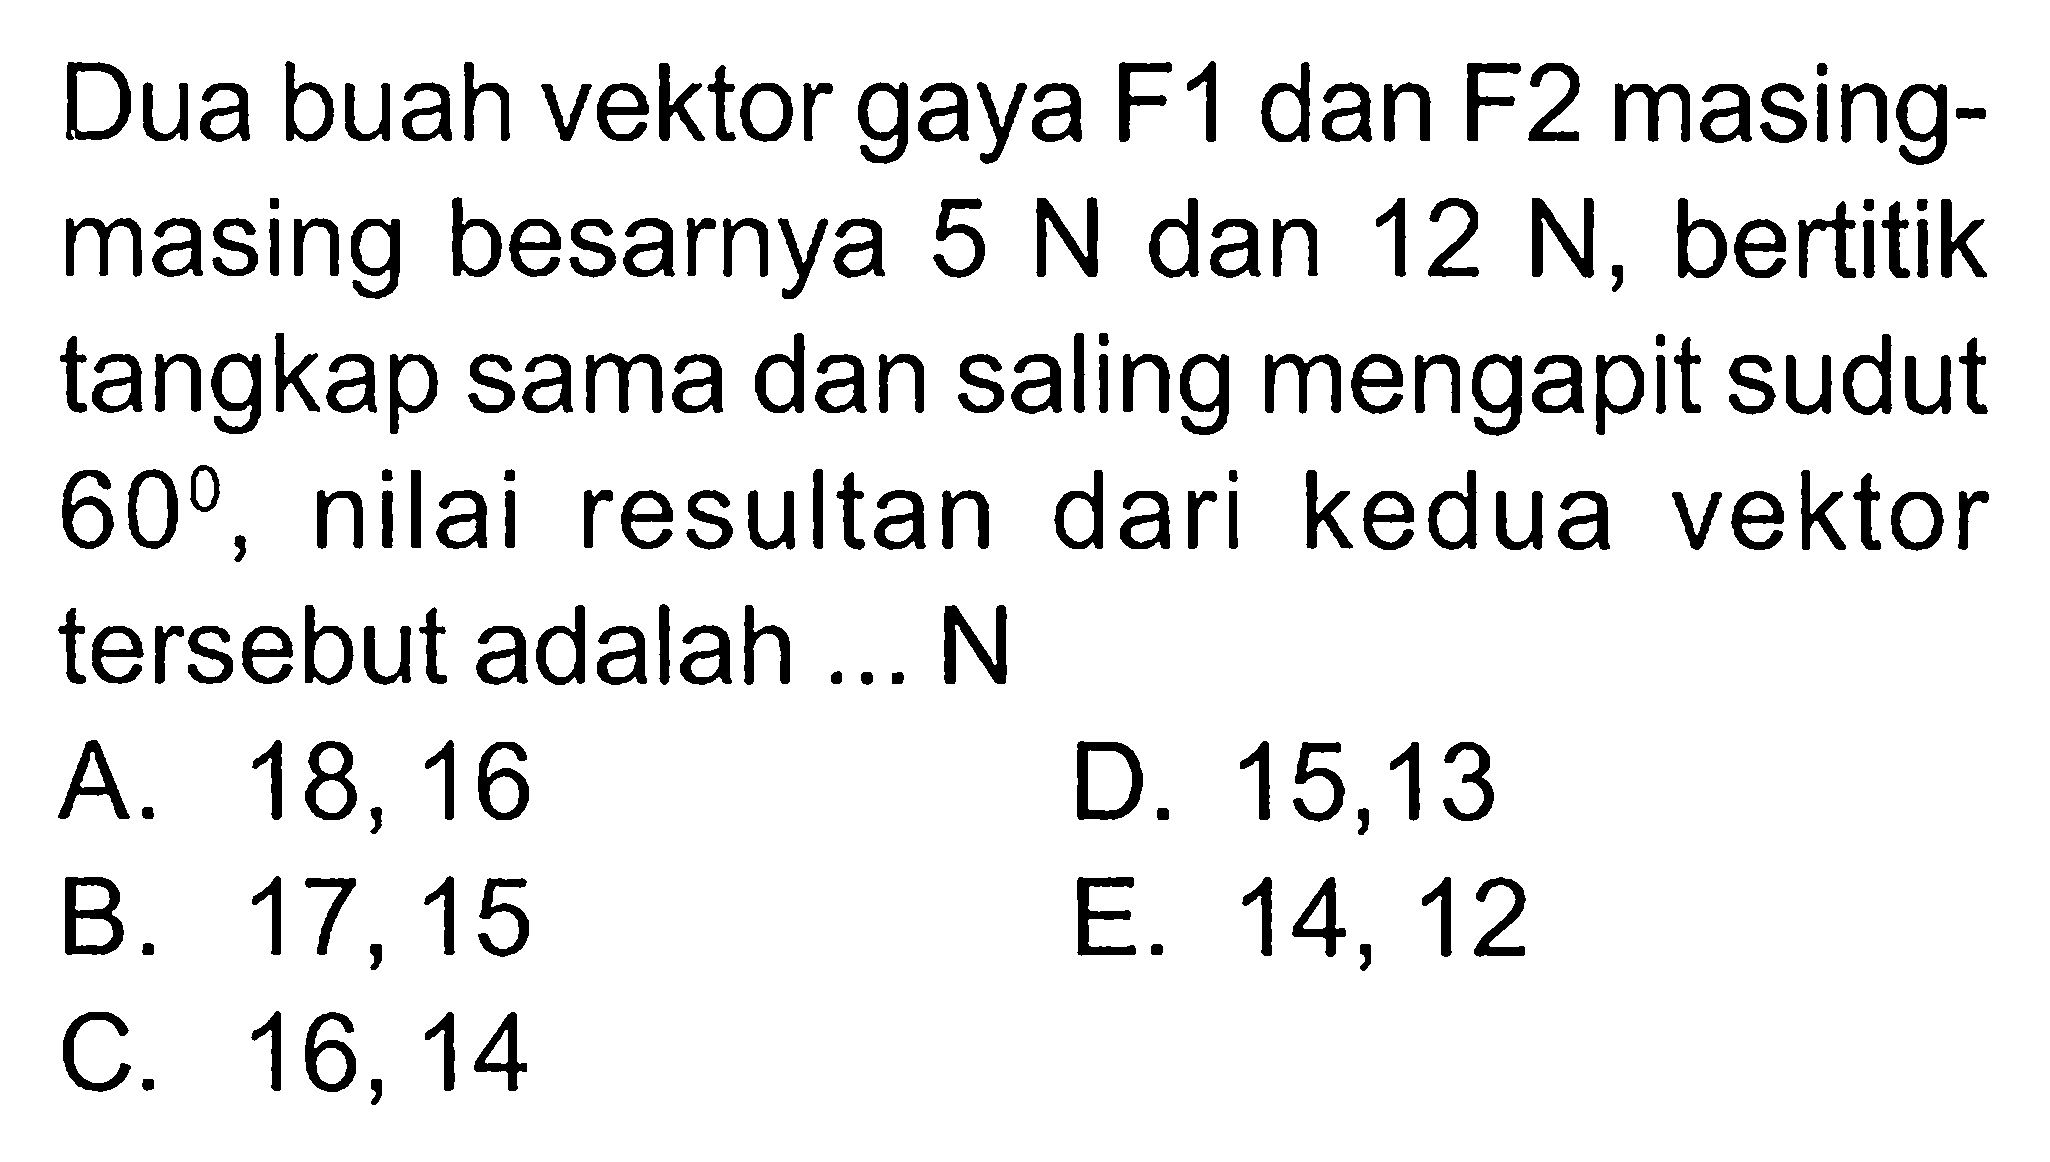 Dua buah vektor gaya F1 dan F2 masing - masing besarnya 5 N dan 12 N, bertitik tangkap sama dan saling mengapit sudut 60, nilai resultan dari kedua vektor tersebut adalah .. .N